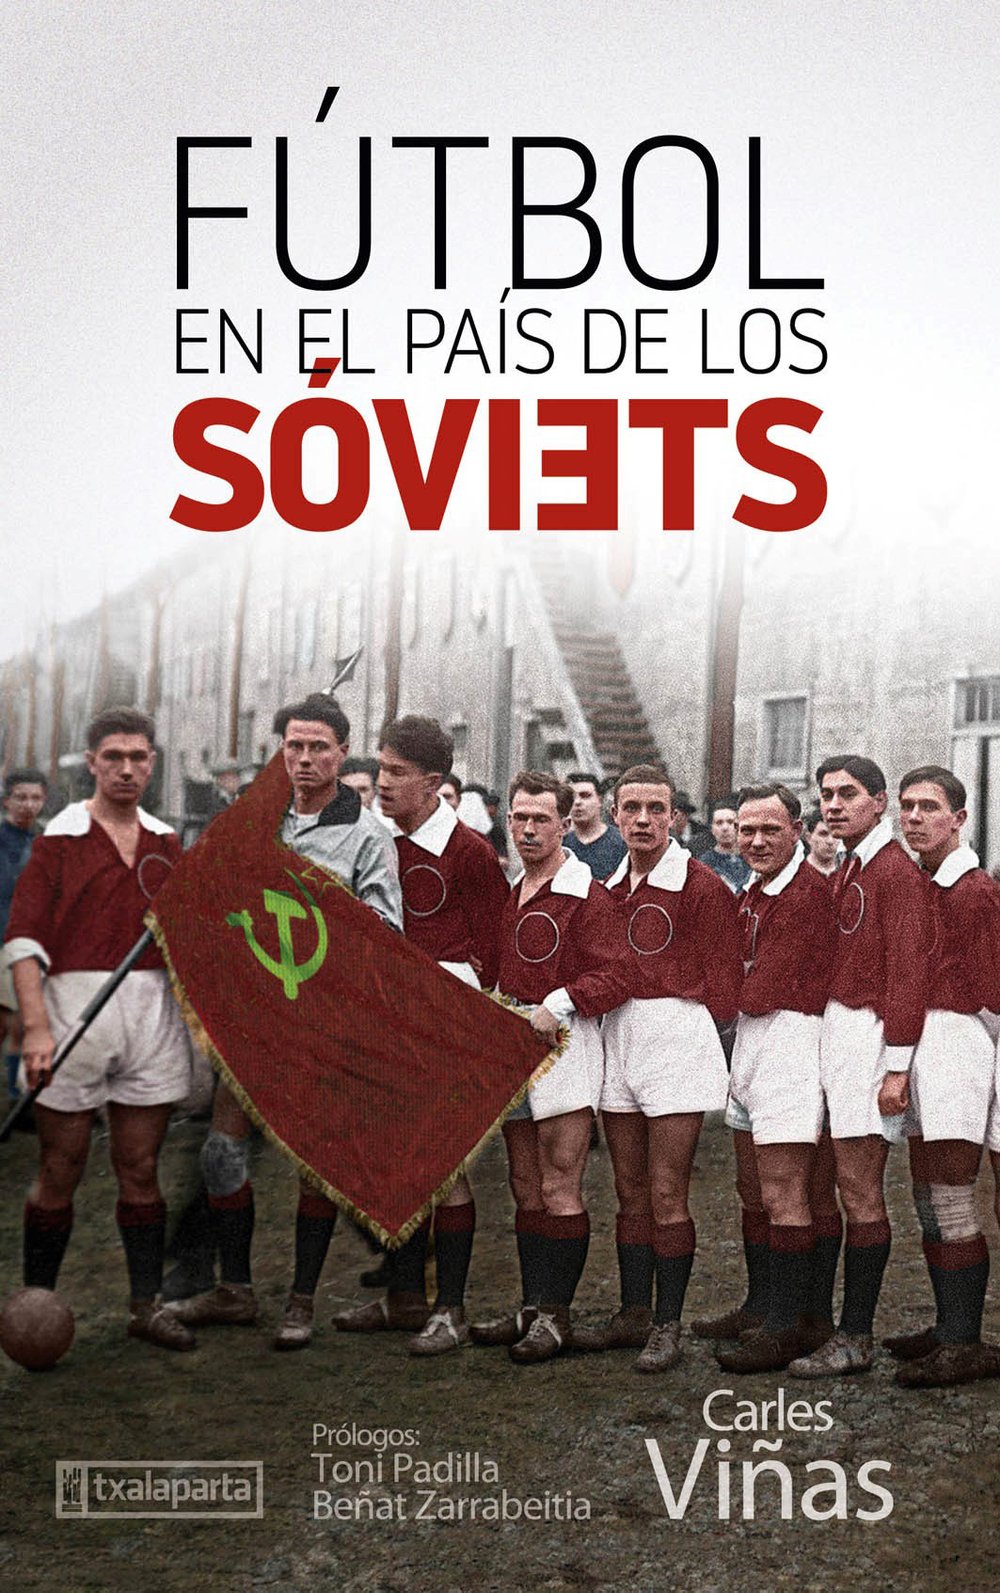 Futbol en el pais de los soviets.jpg